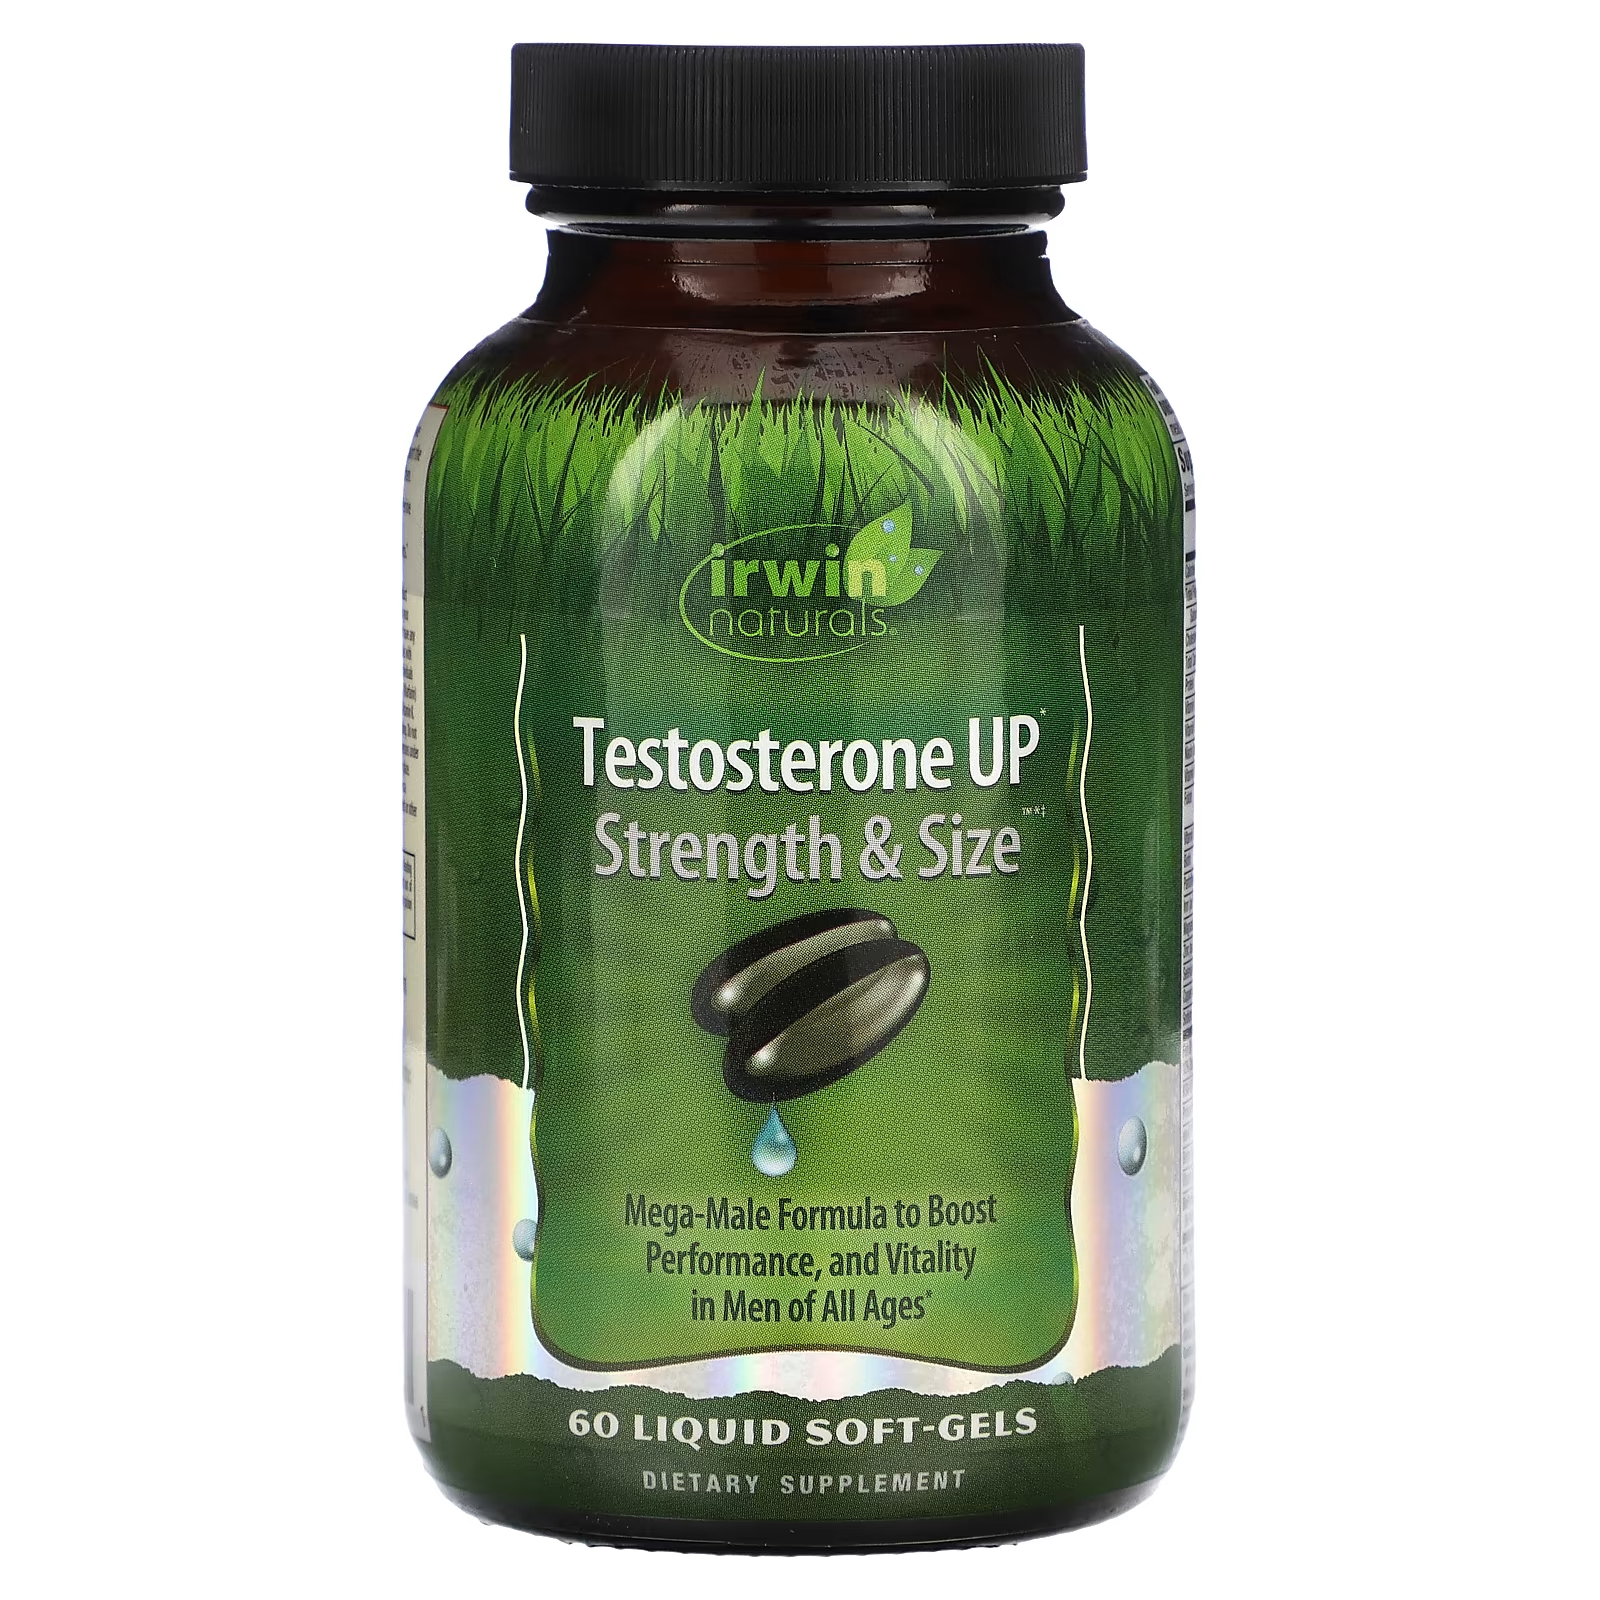 Пищевая добавка Irwin Naturals Testosterone Up Strength & Size, 60 жидких таблеток пищевая добавка six star для повышения уровня тестостерона 60 капсул